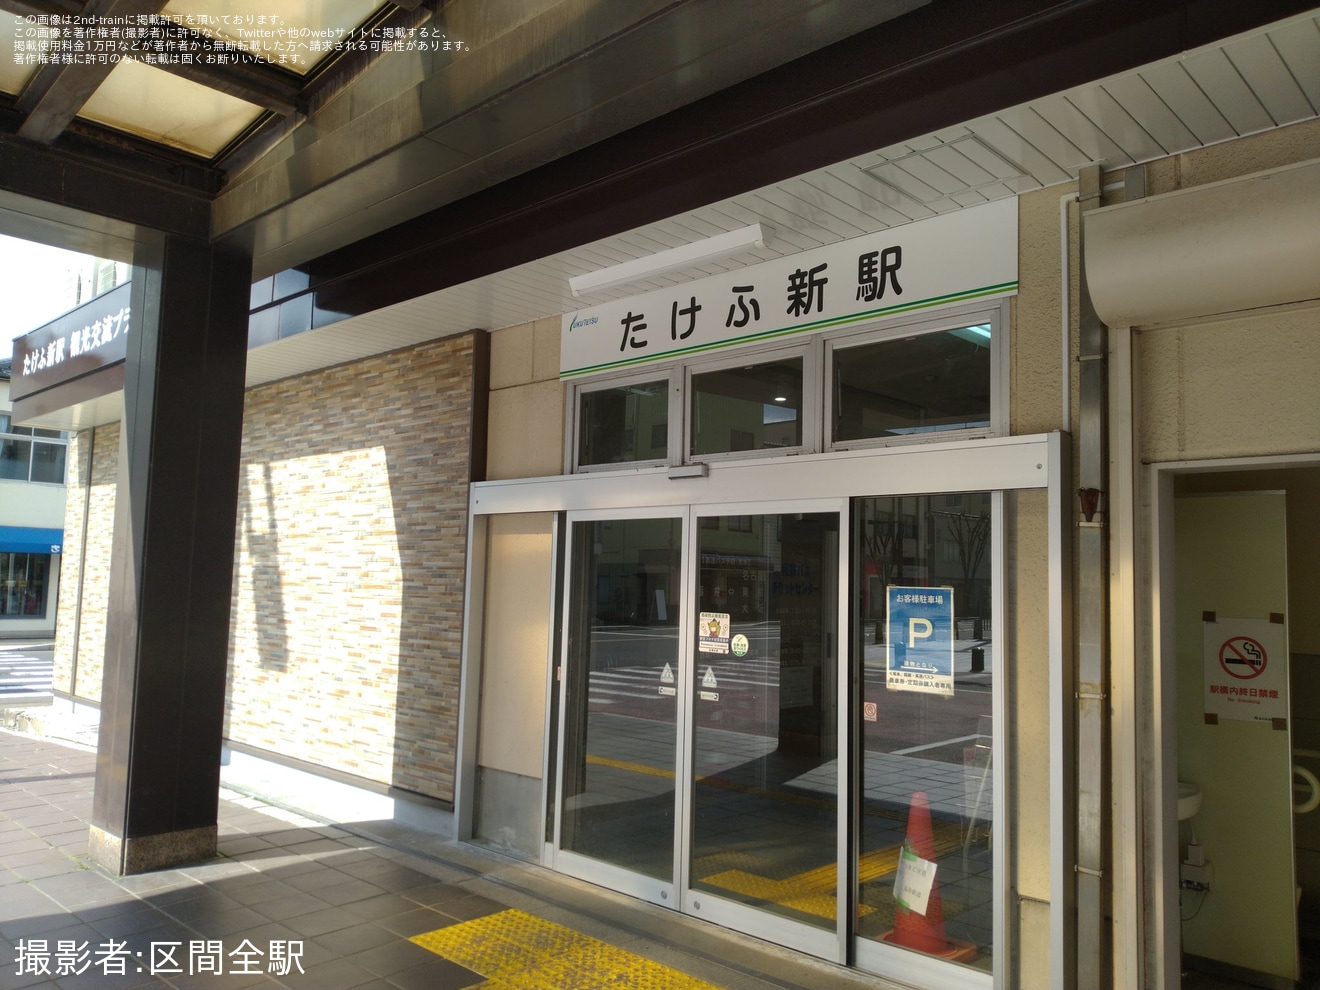 【福鉄】「越前武生駅」が「たけふ新駅」として営業開始の拡大写真